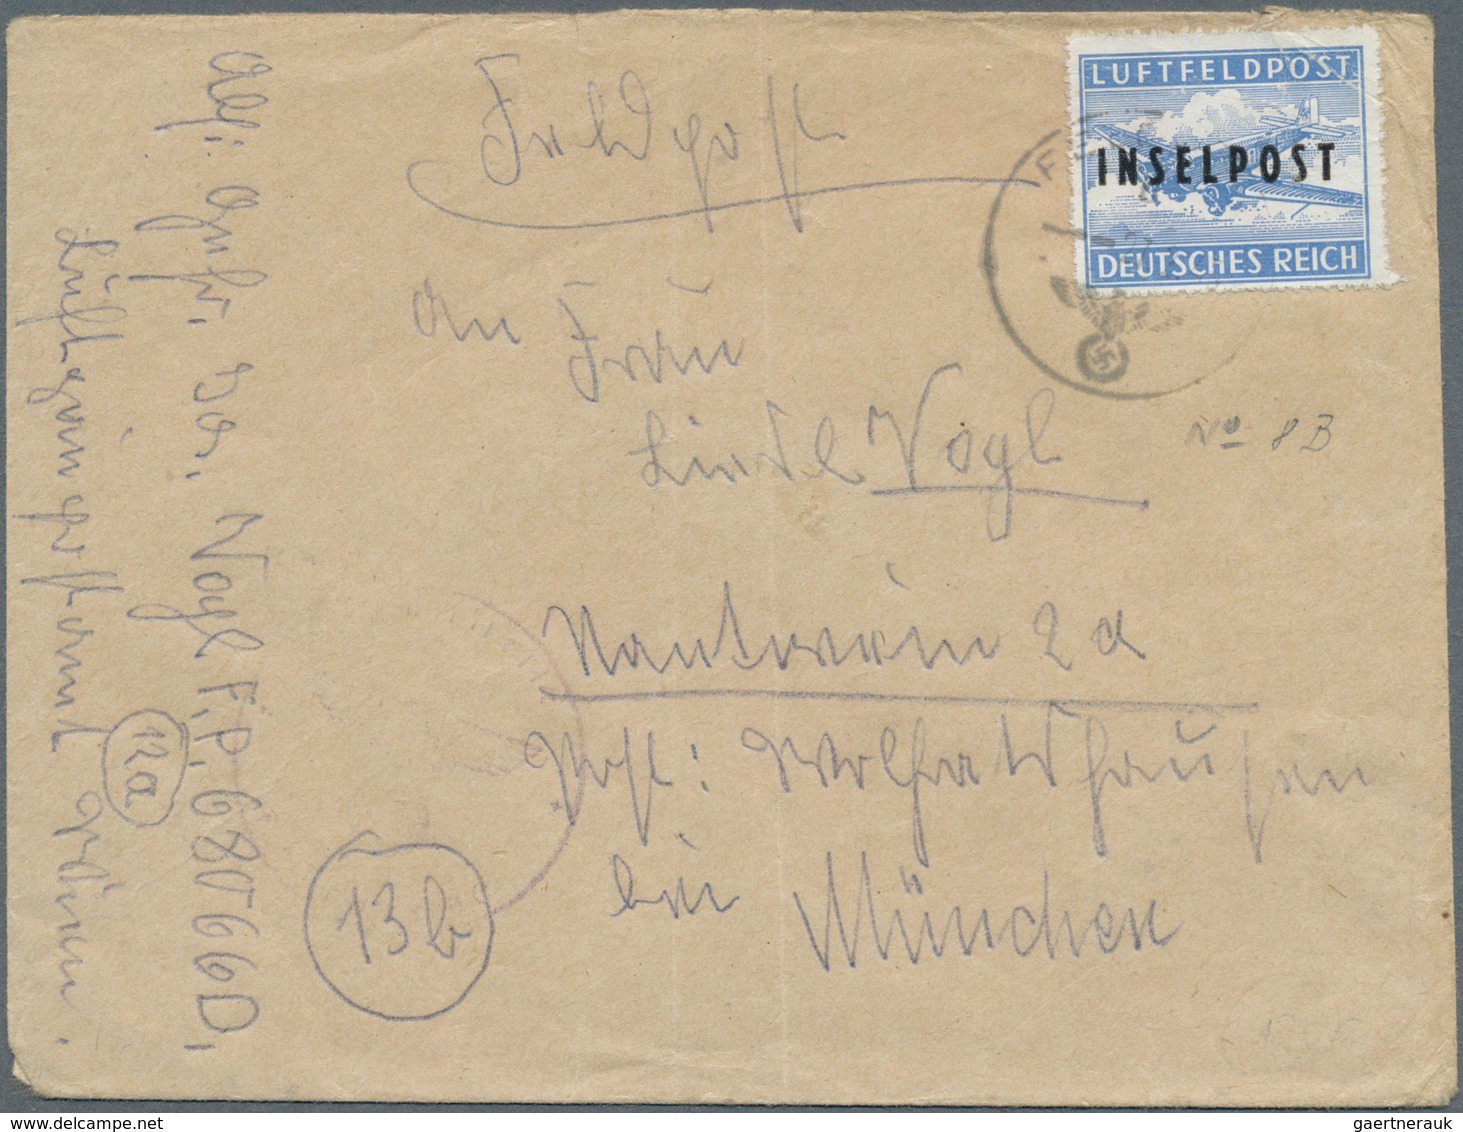 32035 Feldpost 2. Weltkrieg: 1937/1945, vielseitige kleine Feldpostsammlung von über 90 Belegen mit intere